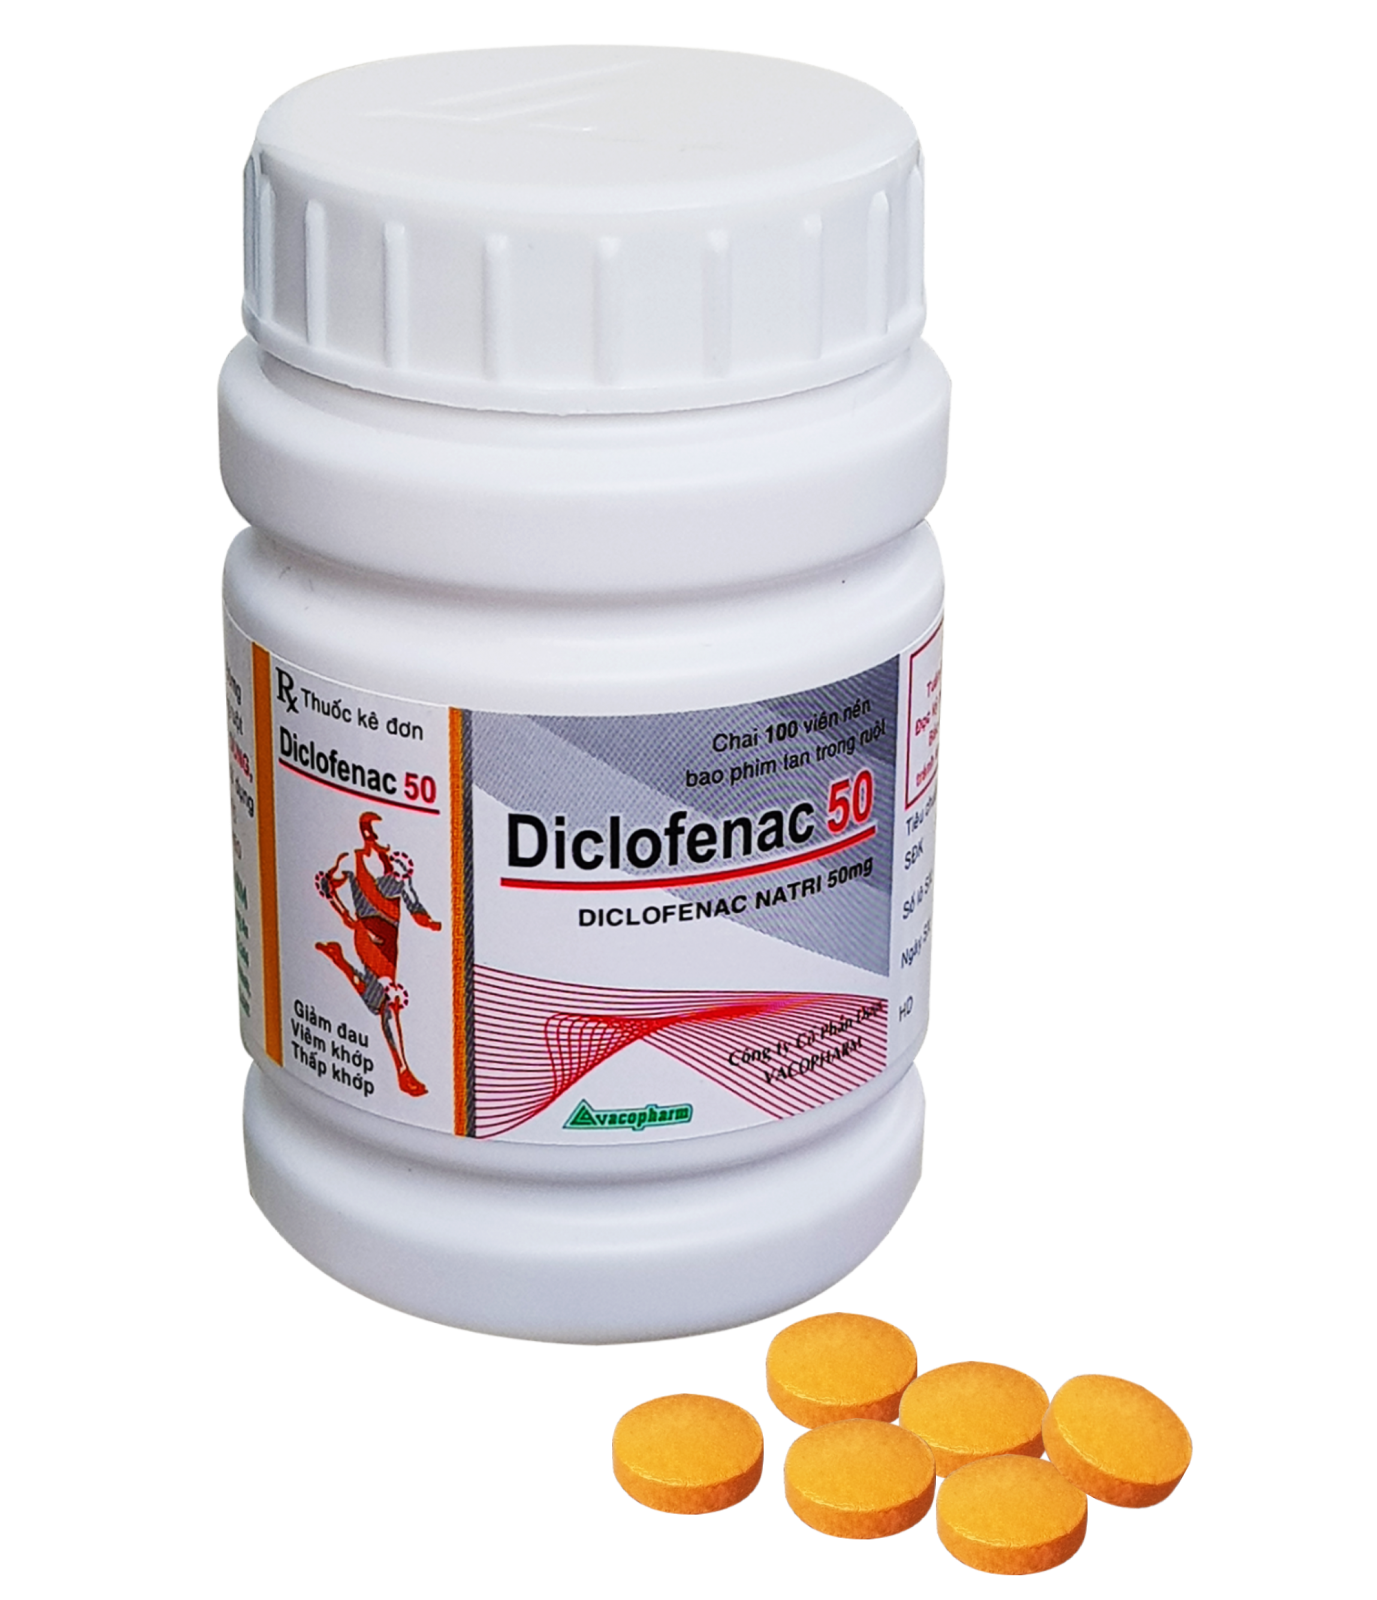 Đánh giá chi tiết về thuốc diclofenac natri 50mg được bác sĩ khuyên dùng